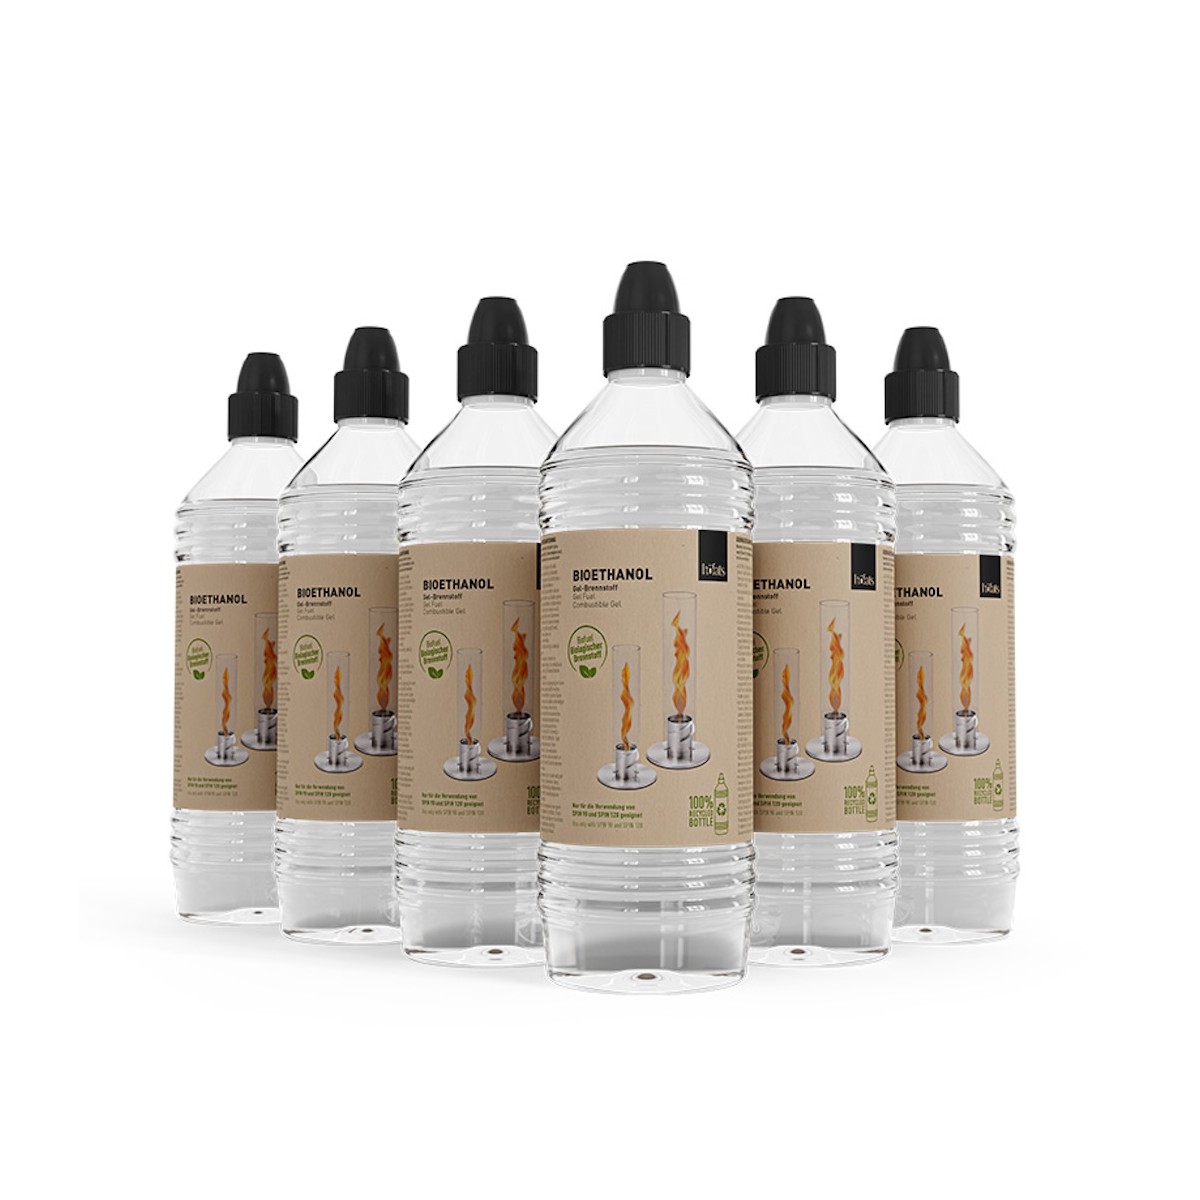 HOFATS SPIN bioethanol gel fuel - 1l bottle (six-pack)